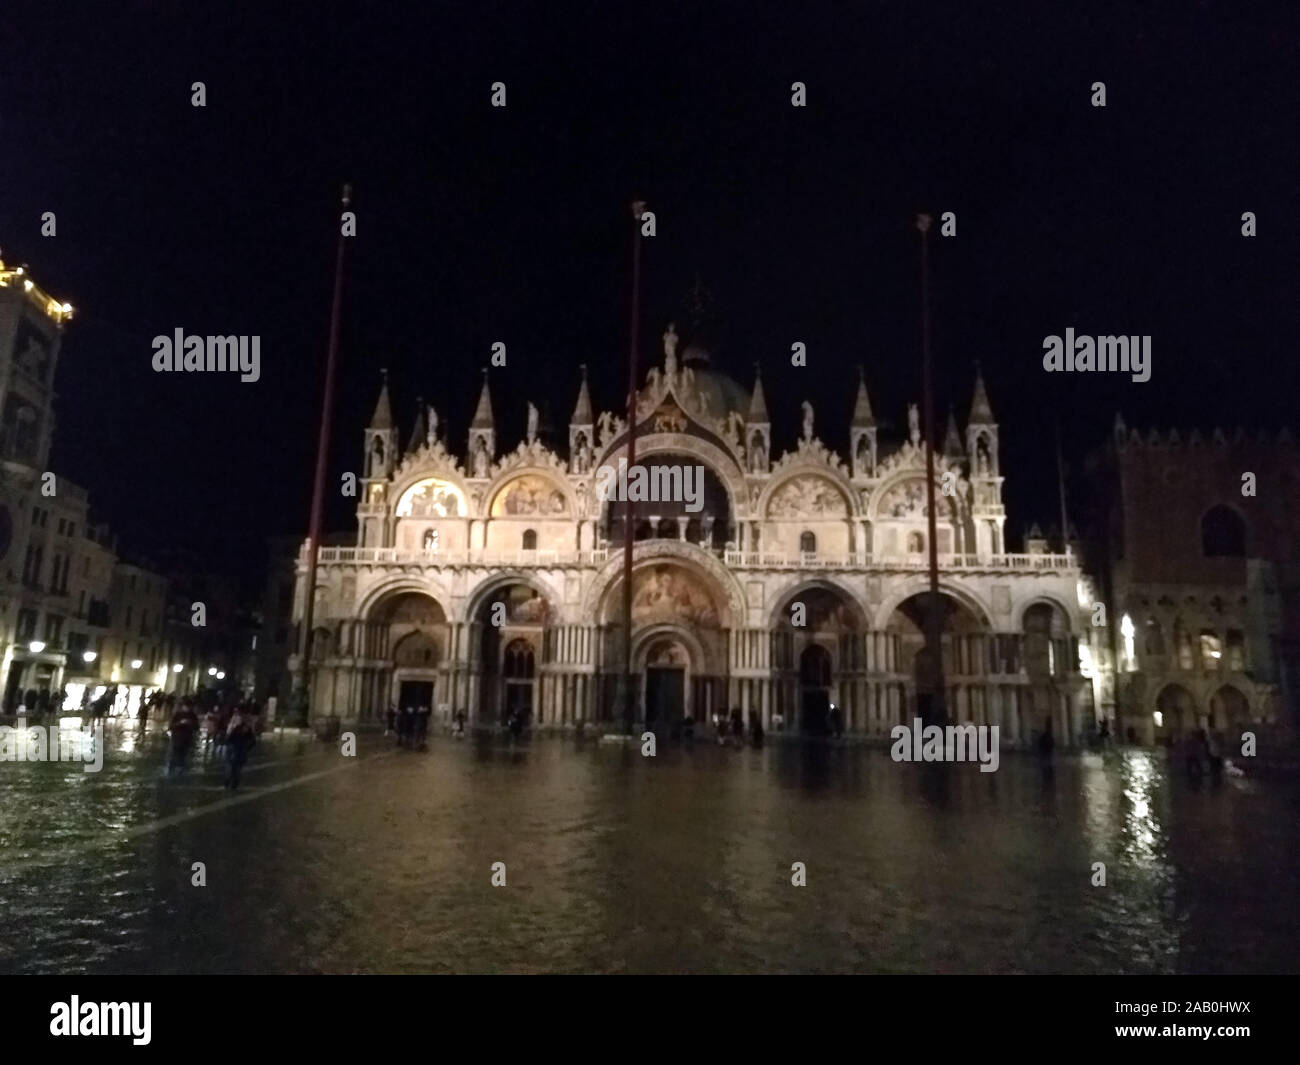 Venecia, Italia - 23 de noviembre de 2019: la Plaza de San Marcos inundada por agua alta Foto de stock